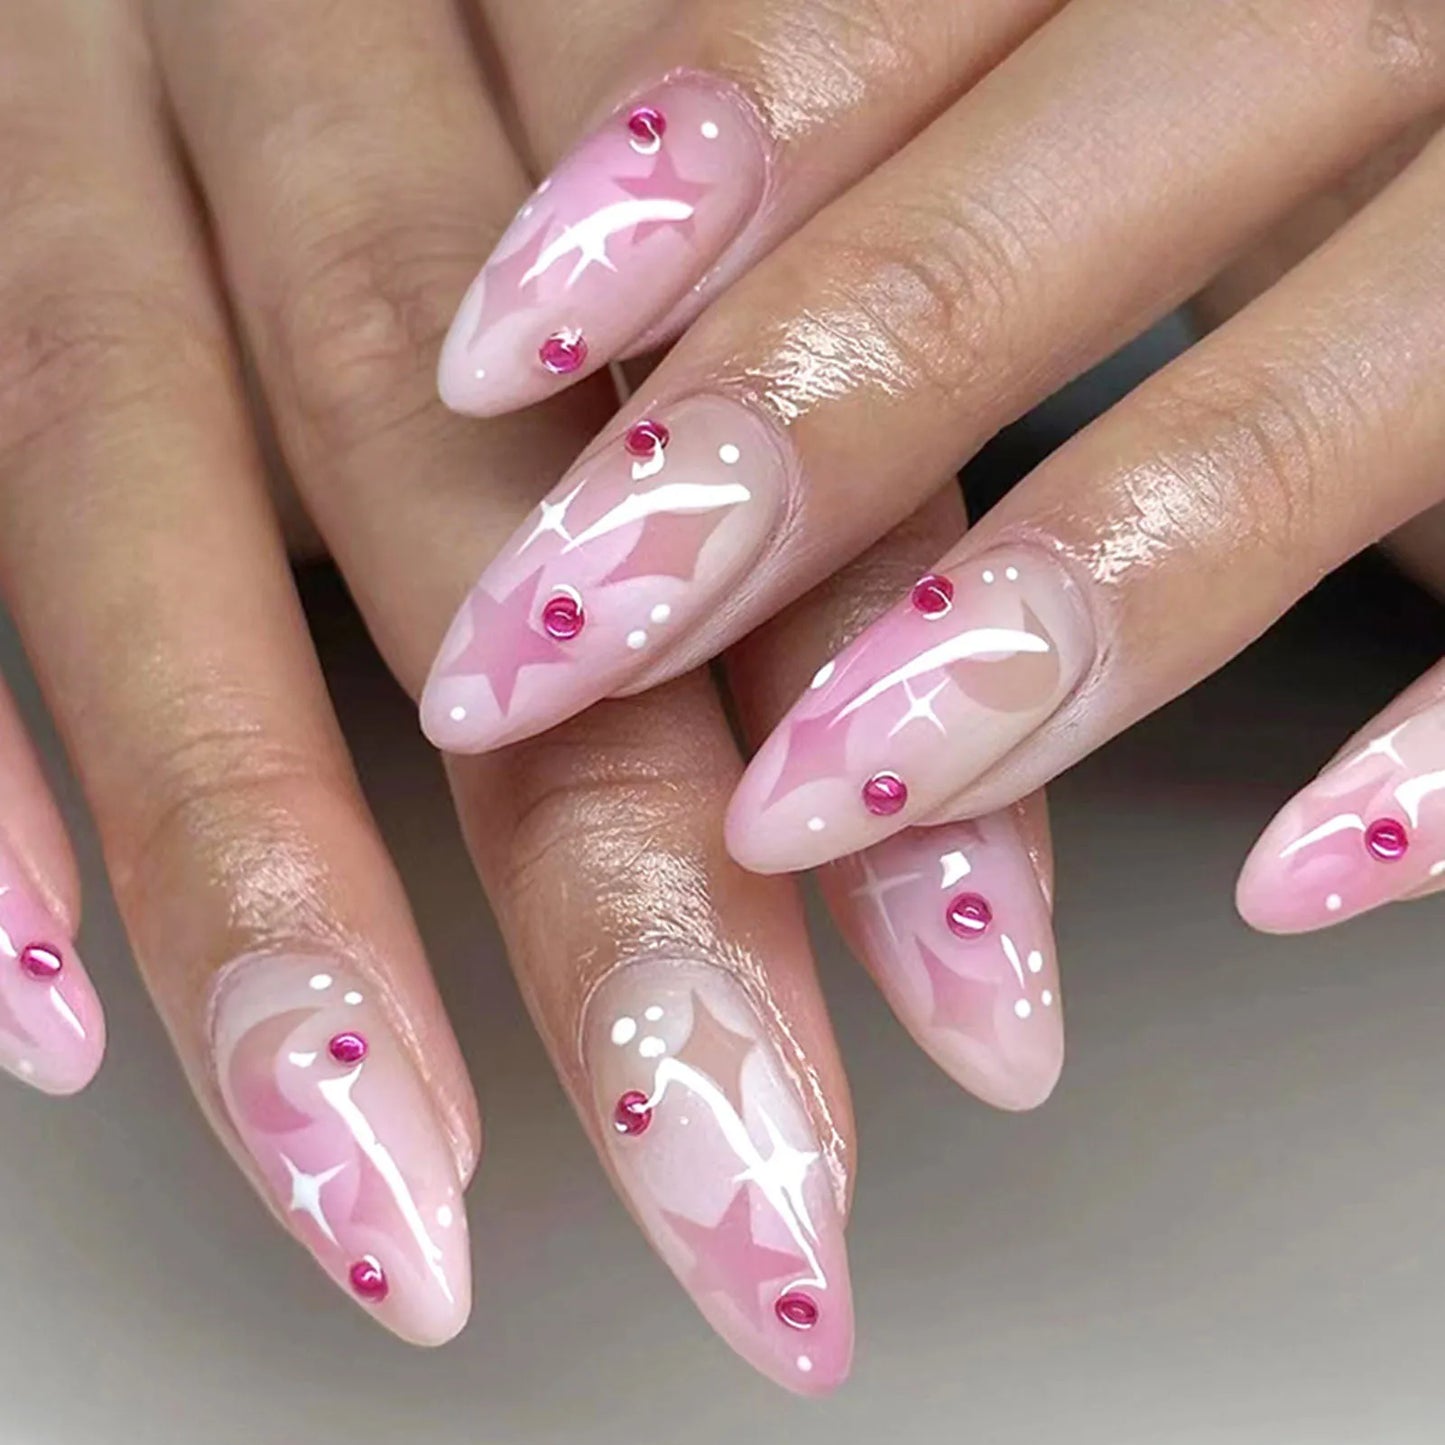 Ddbos Blush Pink False Nails Bowknot Diamond Pearl 3D Design Press on Nail Tips with Harmless Smooth Edge Nails Woman DIY Fake Nails